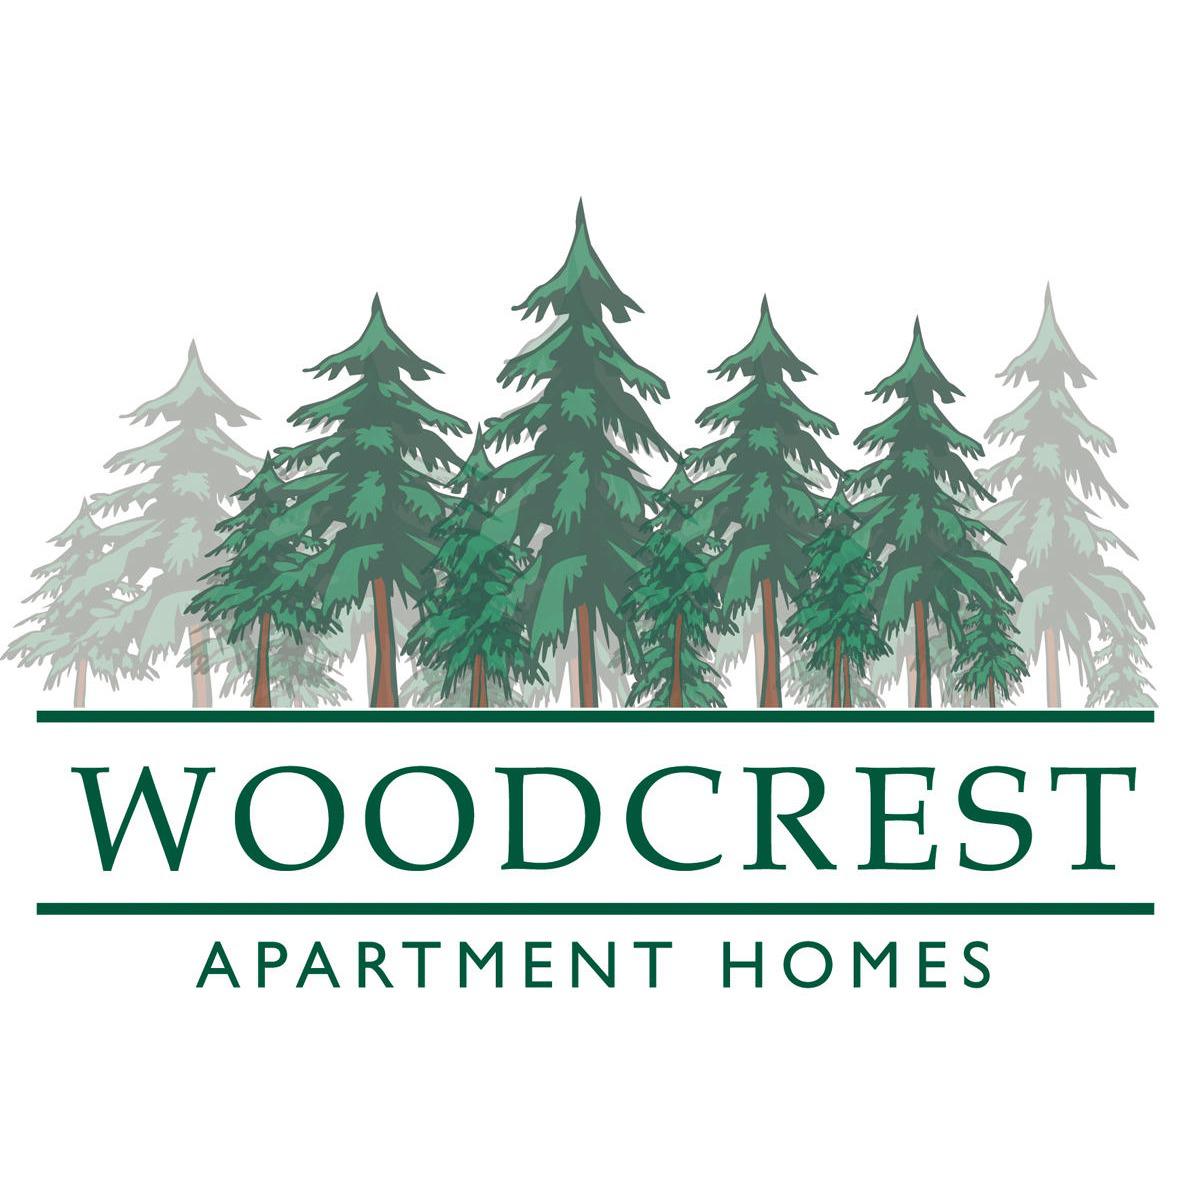 Woodcrest Apartments - Decatur, IL 62526 - (217)875-3308 | ShowMeLocal.com